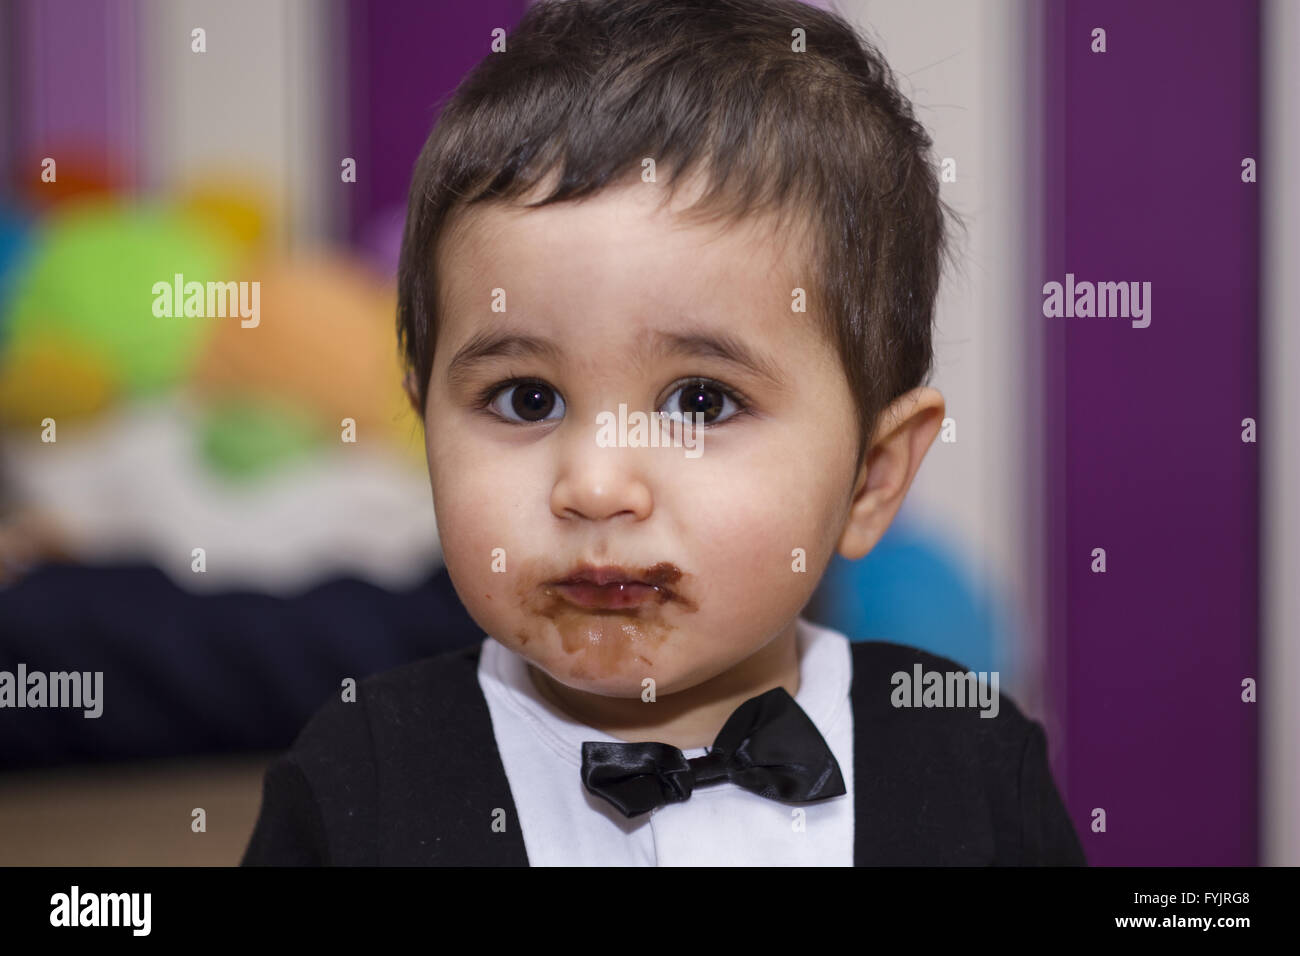 Felice, adorabile happy baby mangiando cioccolato, indossa una tuta e il filtro bow tie Foto Stock